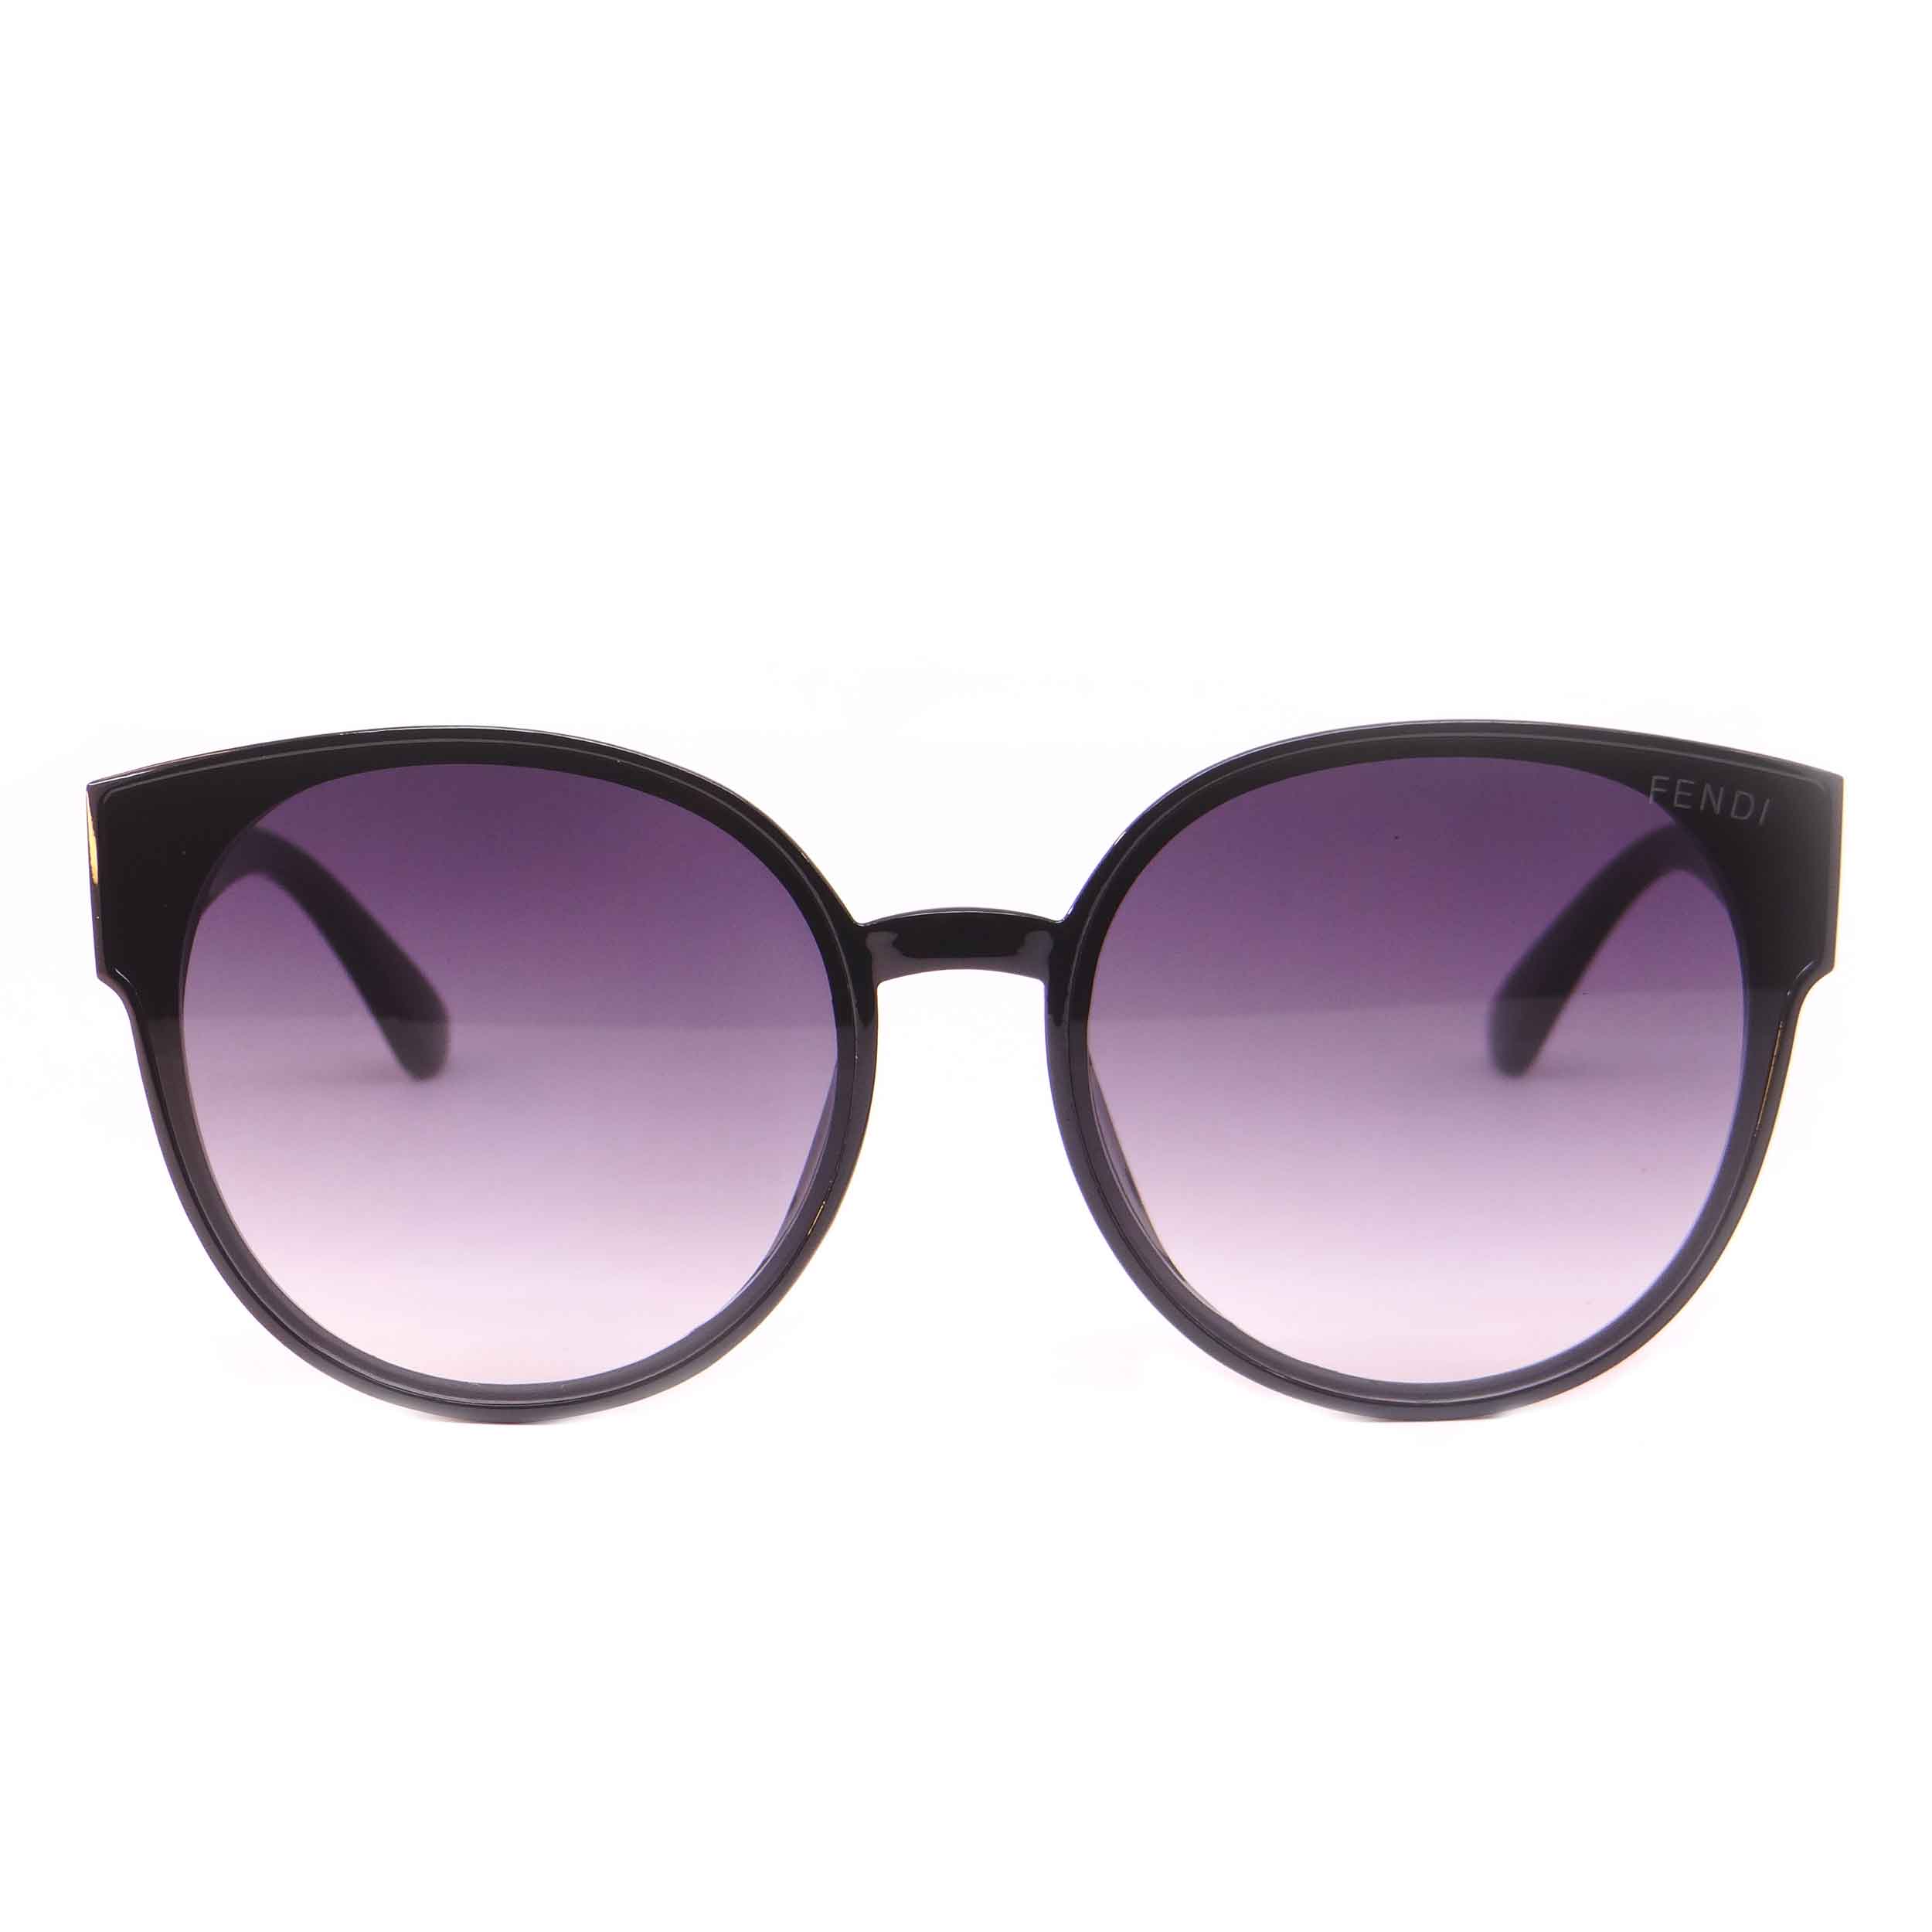 عینک آفتابی زنانه فندی مدل 9902 رنگ مشکی